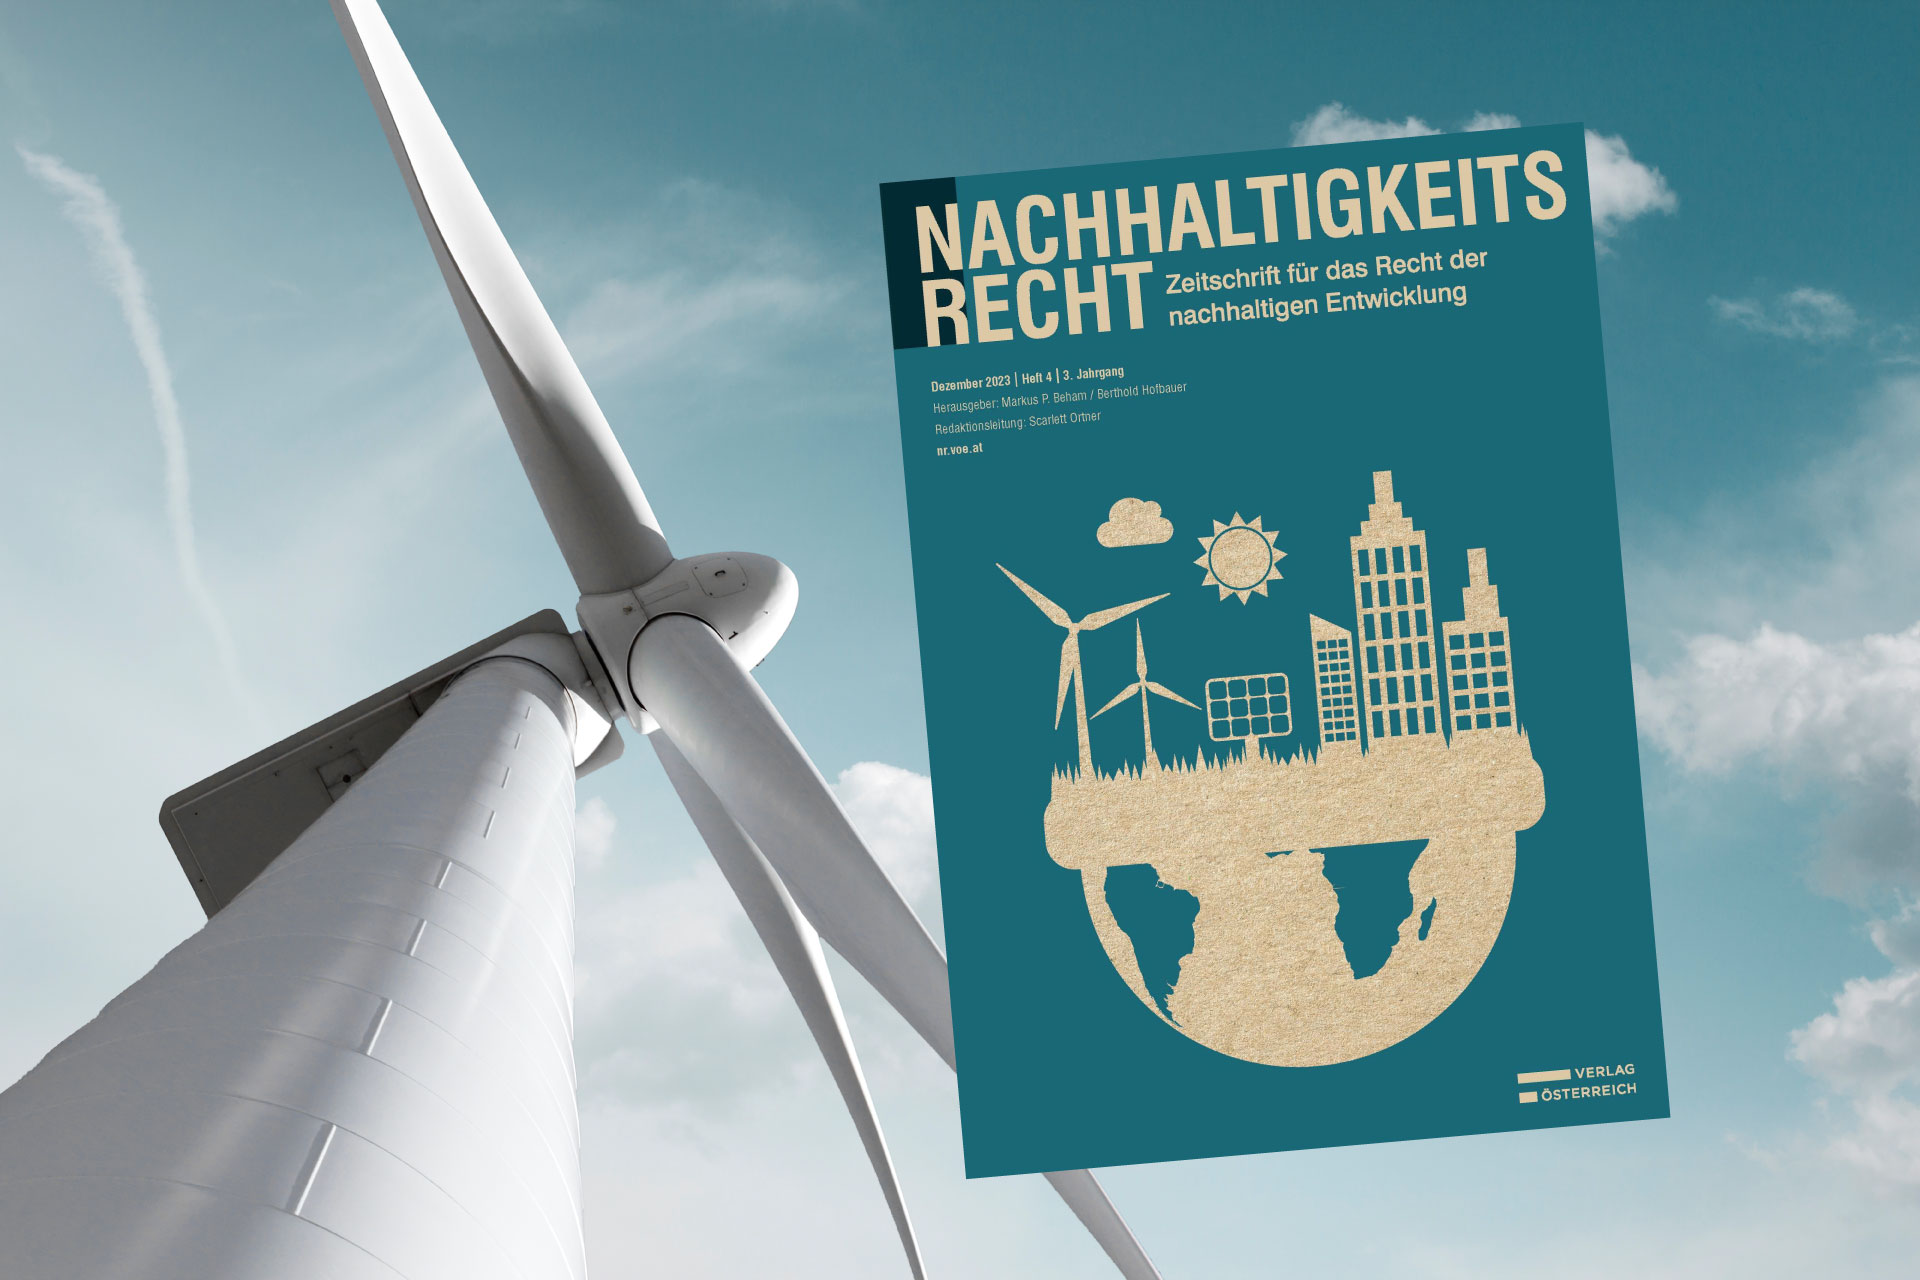 Bild vom Cover der Zeitschrift Nachhaltigkeitsrecht und einem Windrad